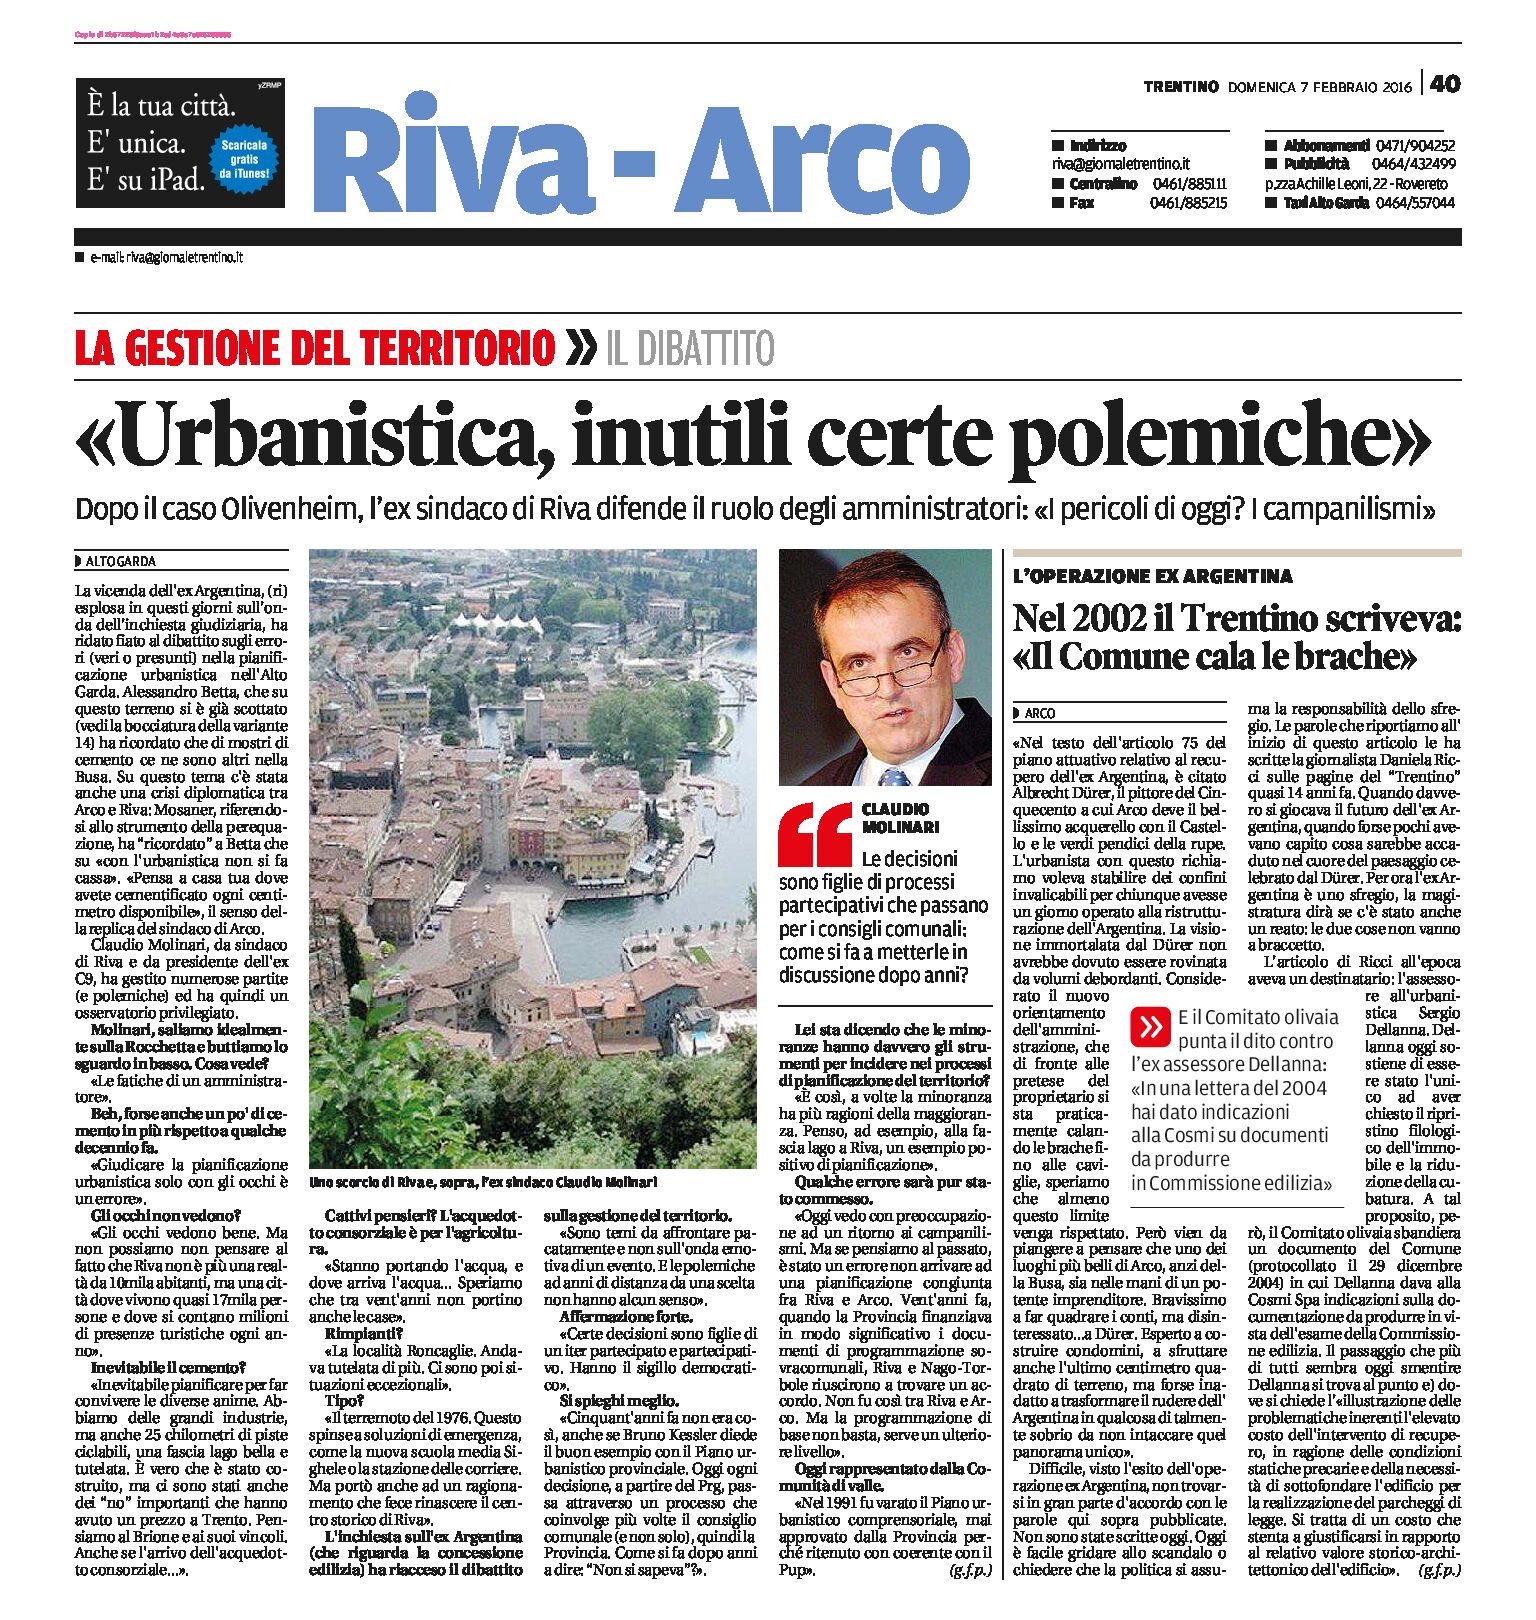 Arco, ex Argentina: Italia Nostra “i politici restino fuori dalle commissioni edilizie”